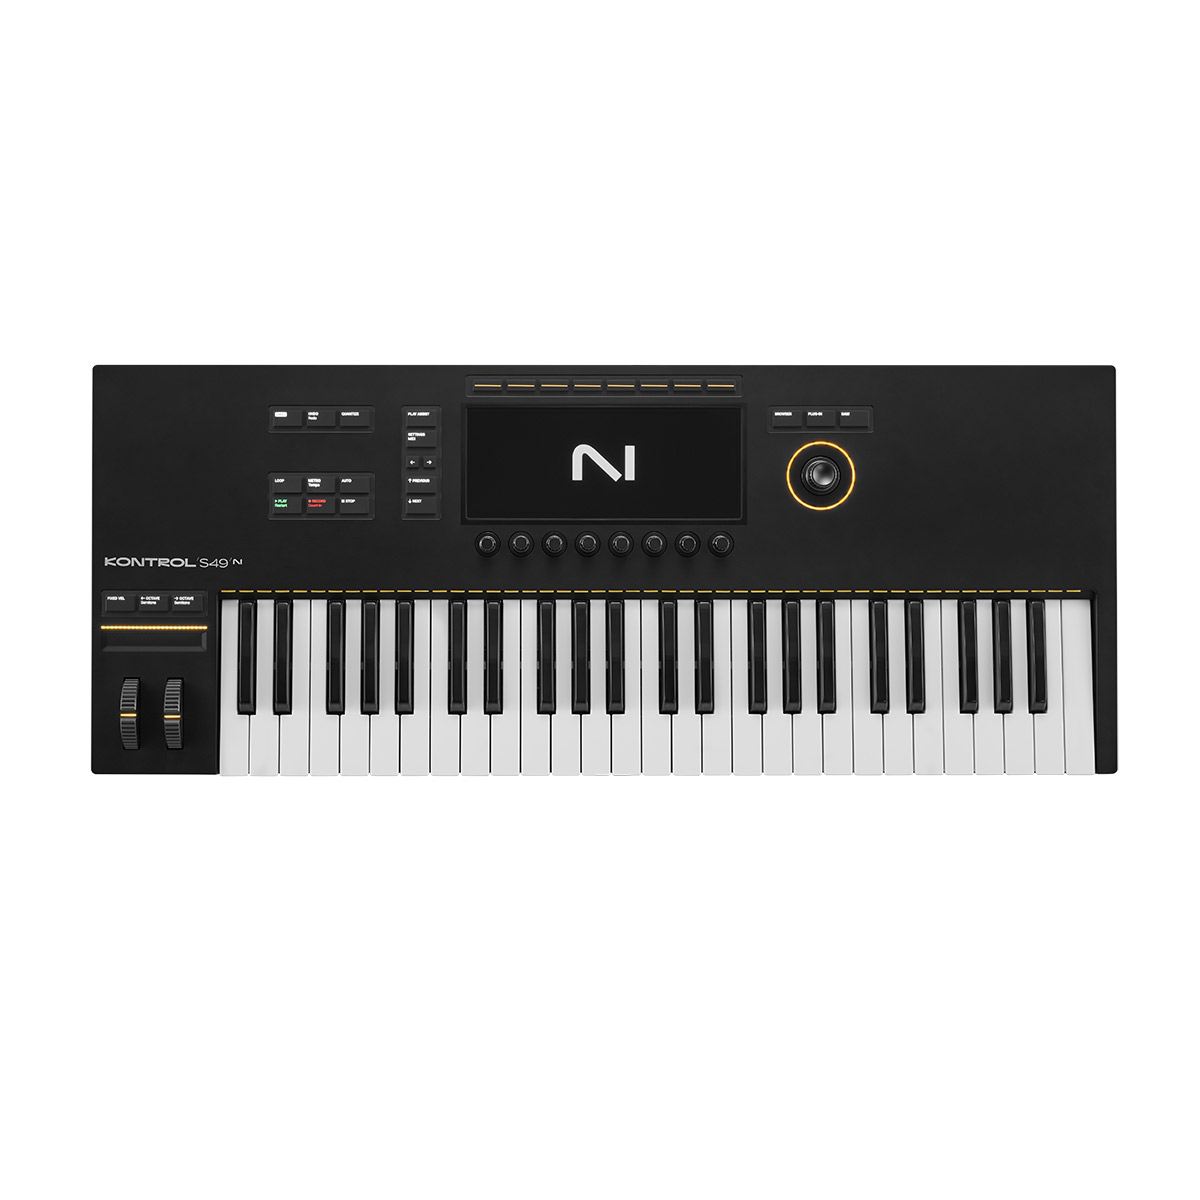 値段設定 【6381】 KOMPLETE KONTROL S49 MIDI キーボード | www.ouni.org